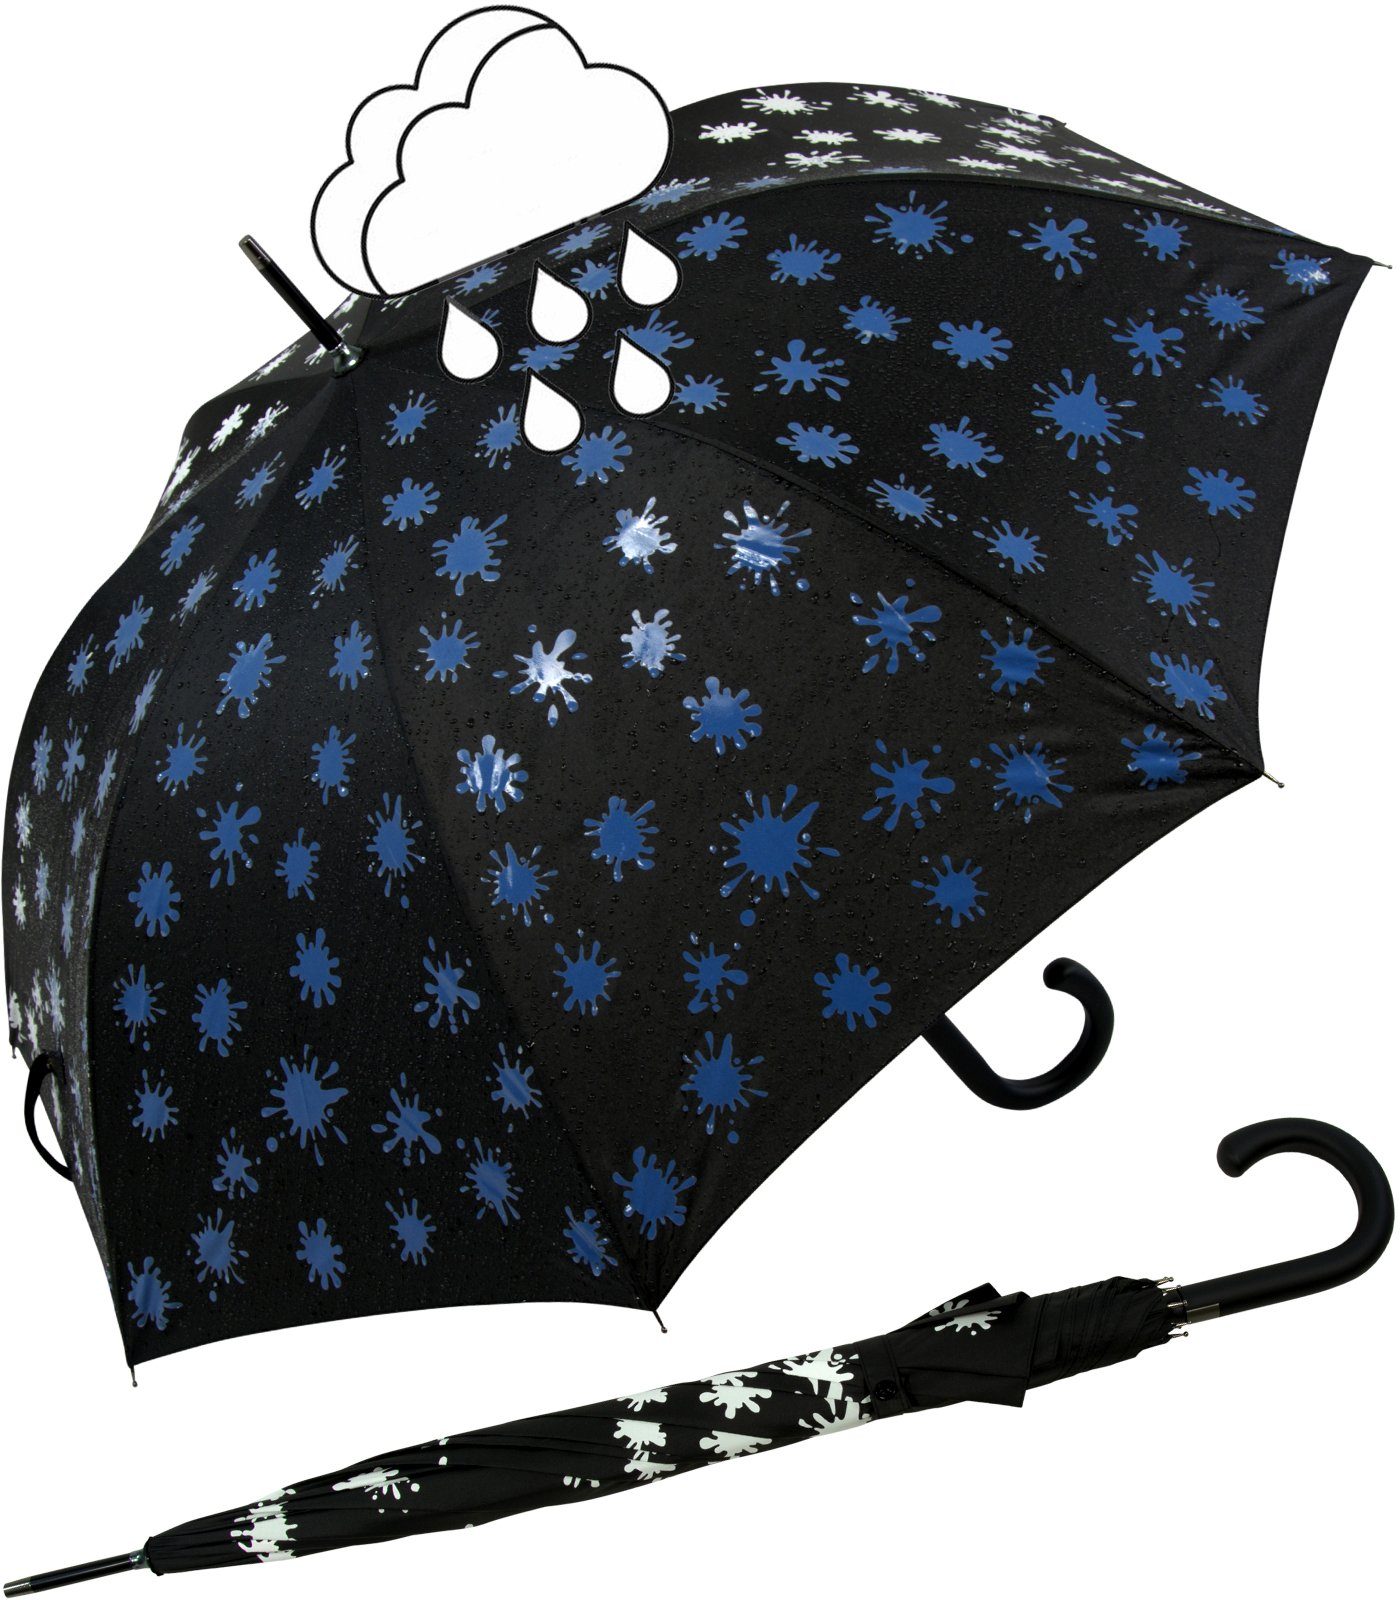 mit - Wet Langregenschirm iX-brella Farbkleckse iX-brella Print, schwarz-weiß-blau bei Damenschirm Farbänderung Nässe und Automatik blau